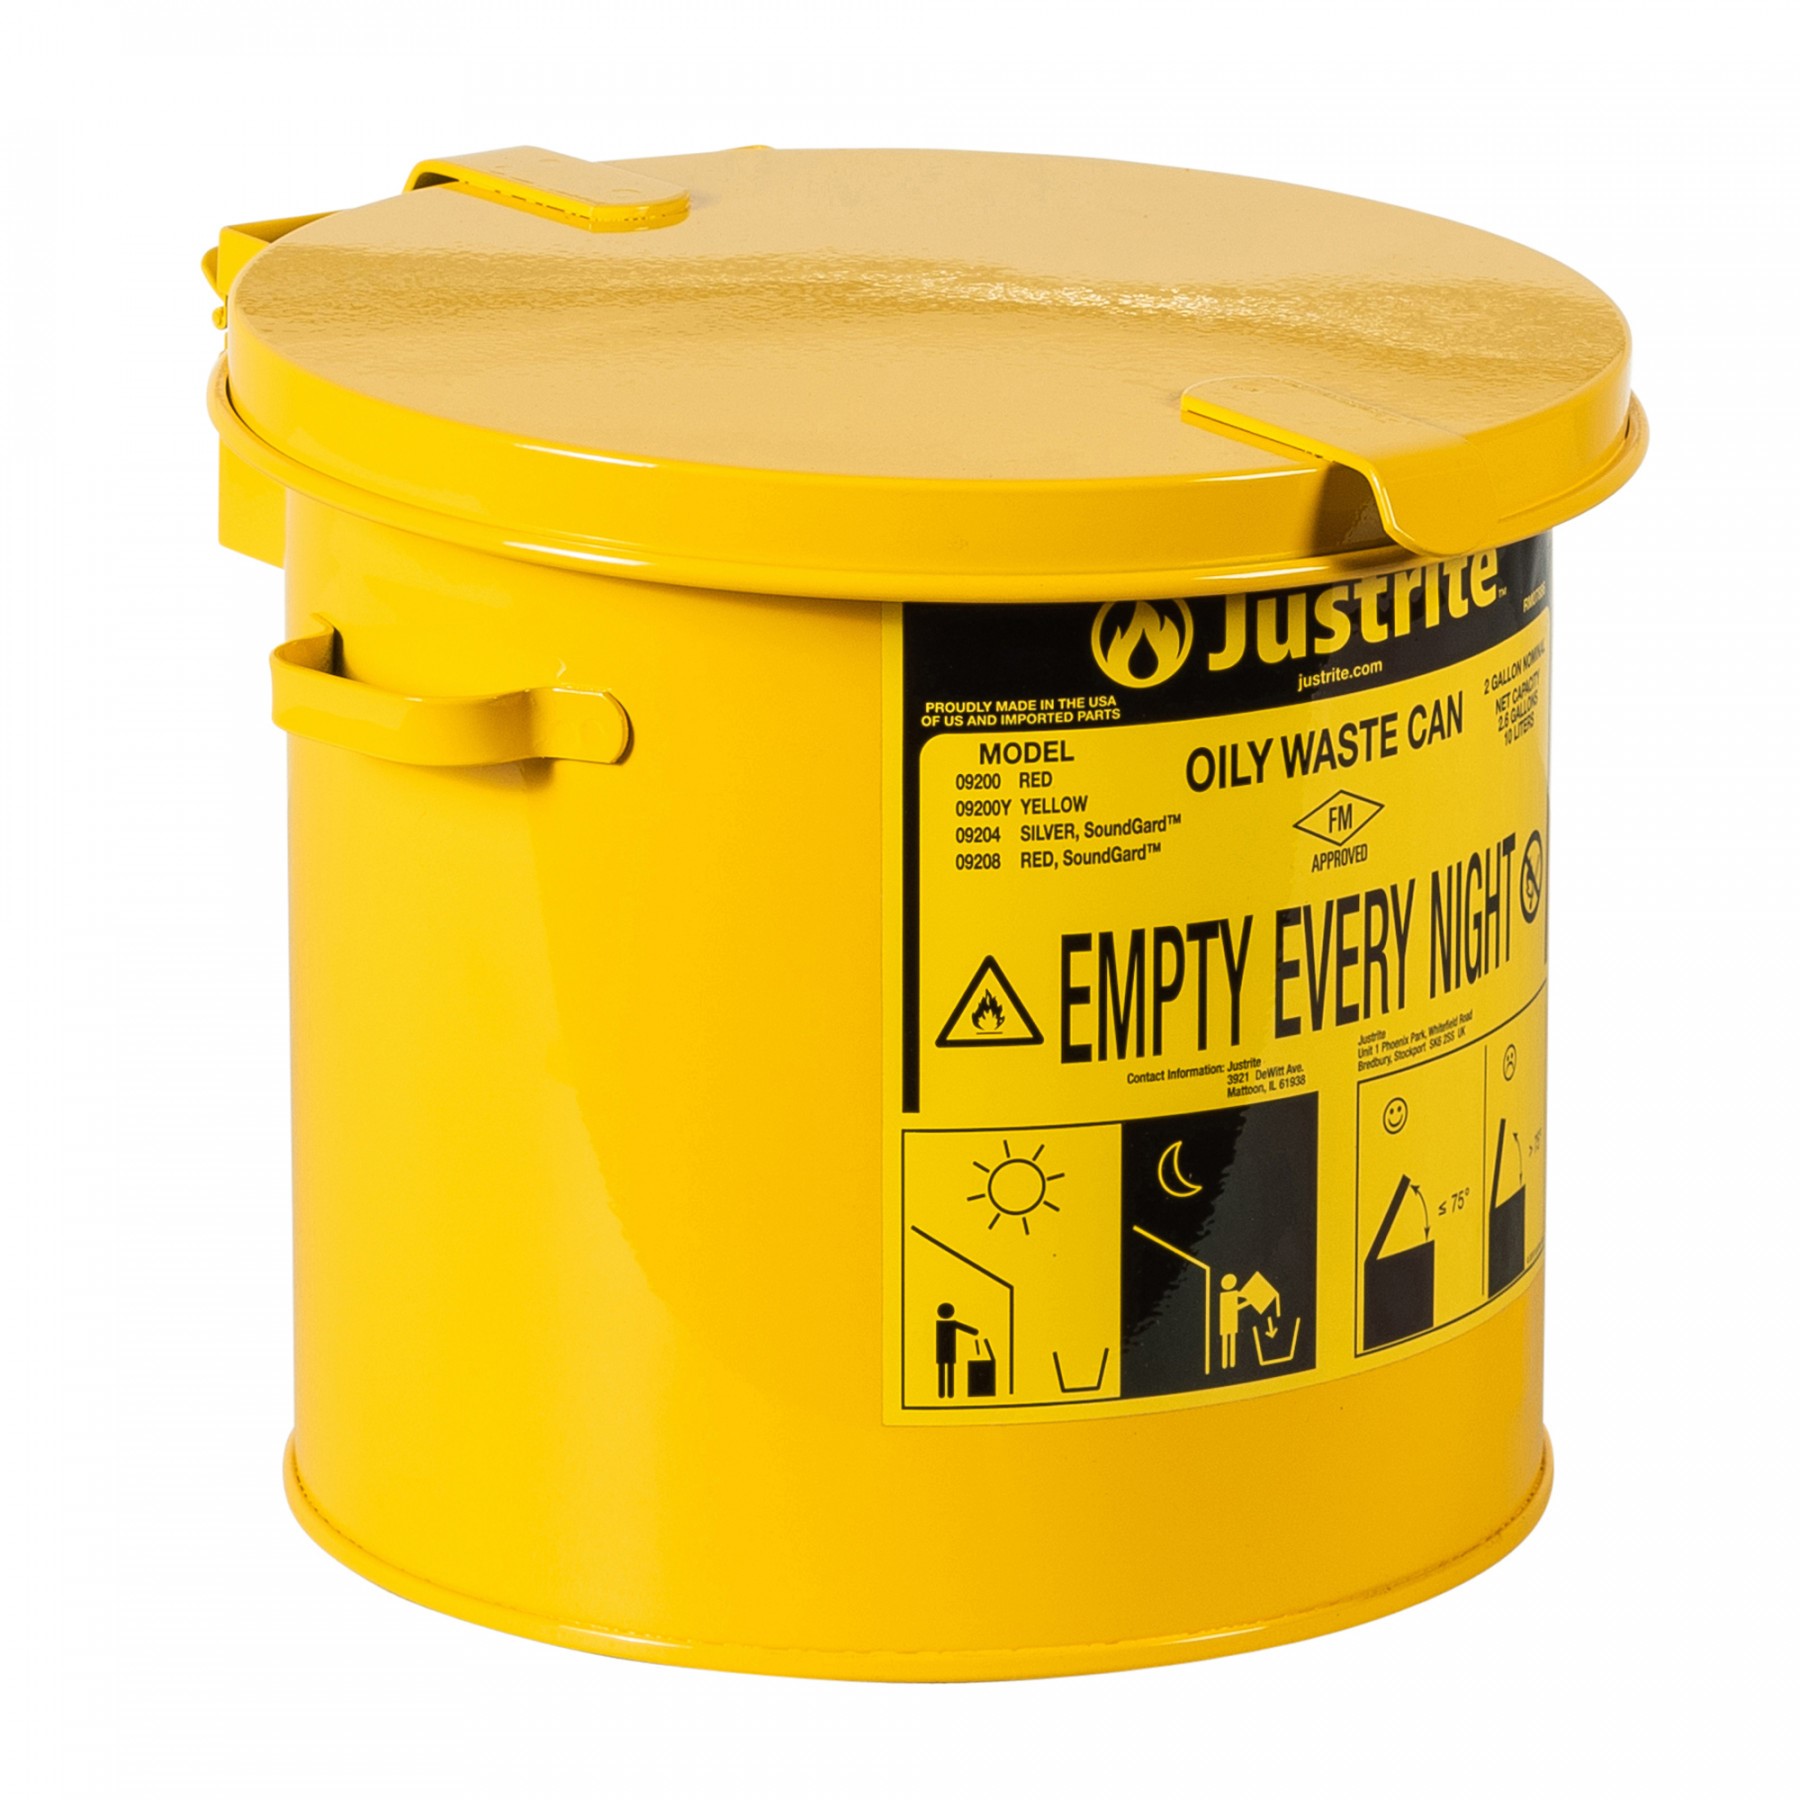 Sicherheits-Abfallbehälter für brennbare Stoffe, 8 Liter, in gelb